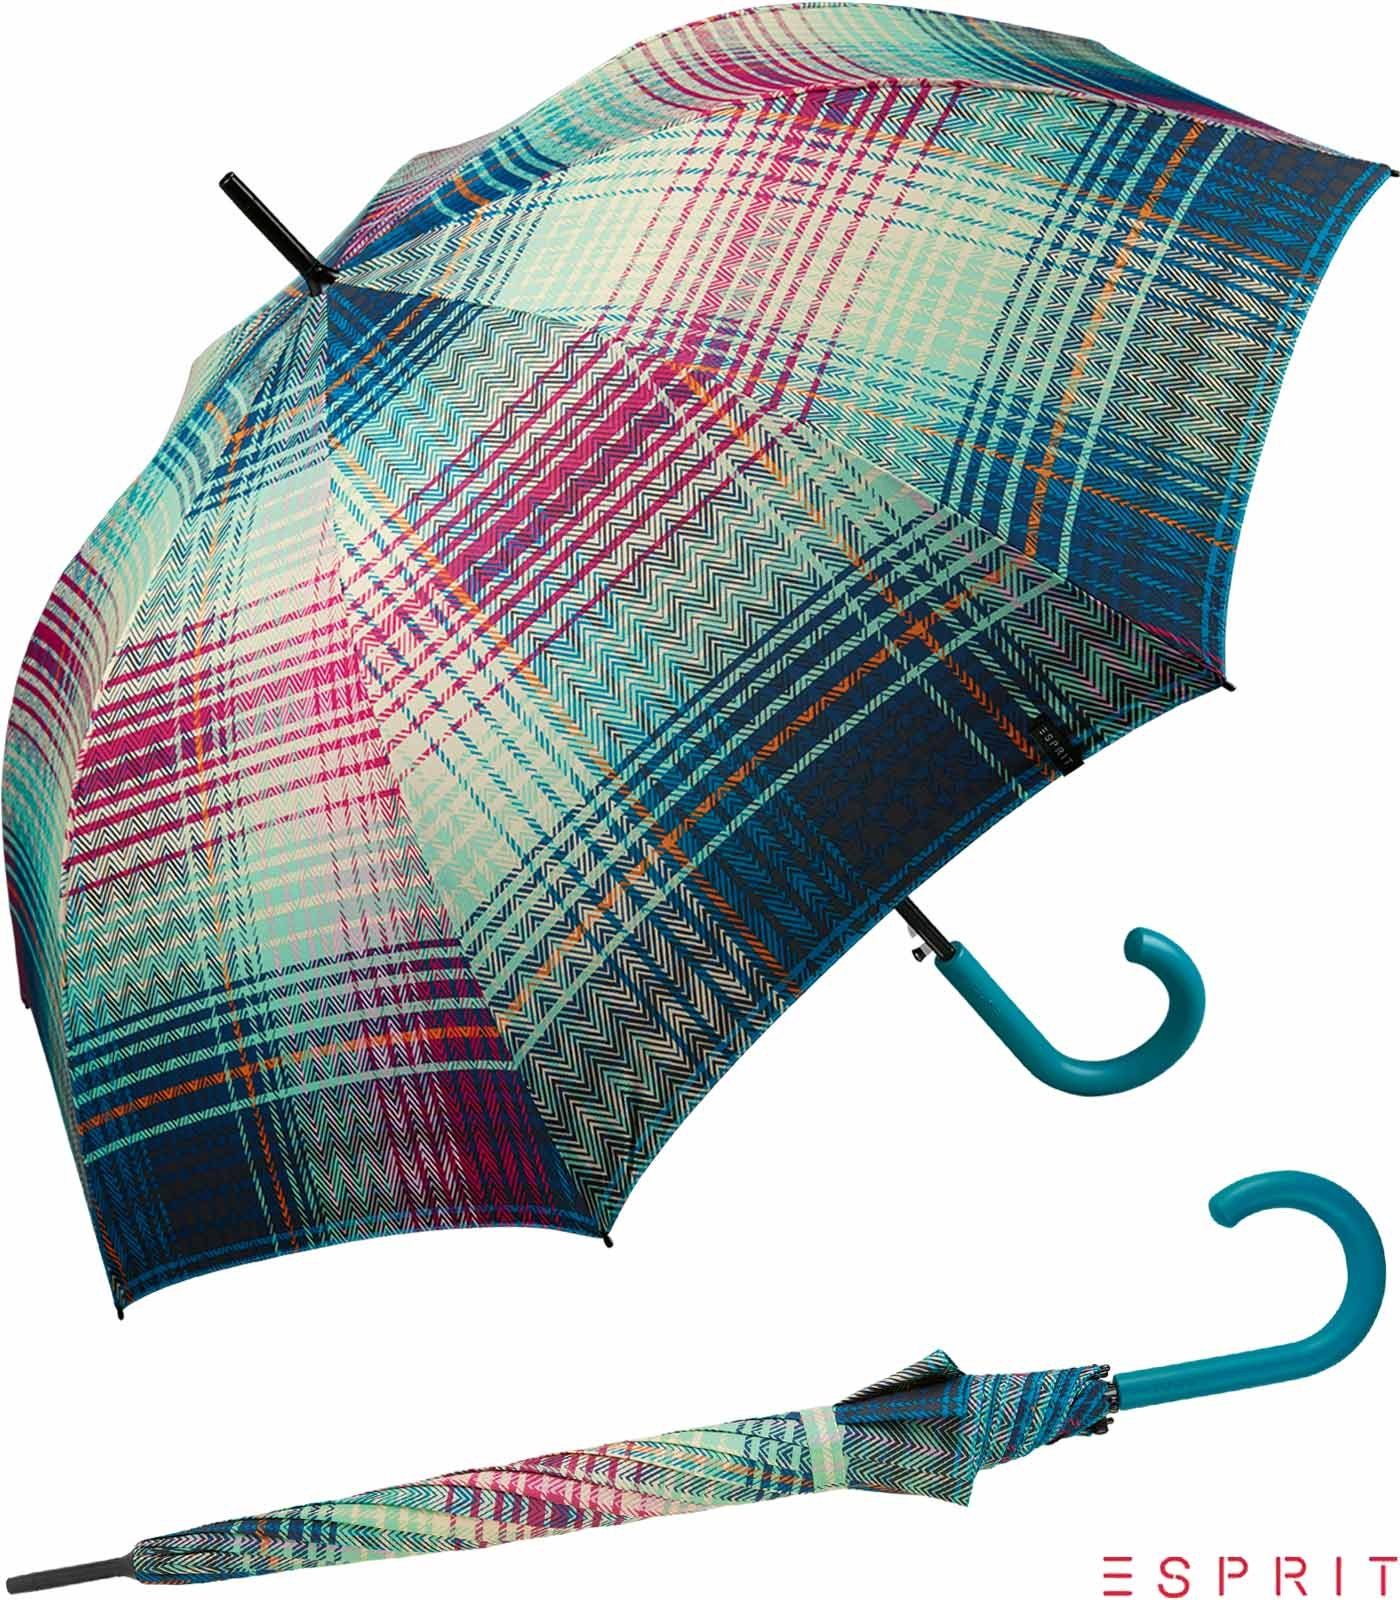 Esprit Langregenschirm Damen mit Auf-Automatik - Cosy Checks - ocean depths, groß, stabil, in bunter Karo-Optik türkis-bunt